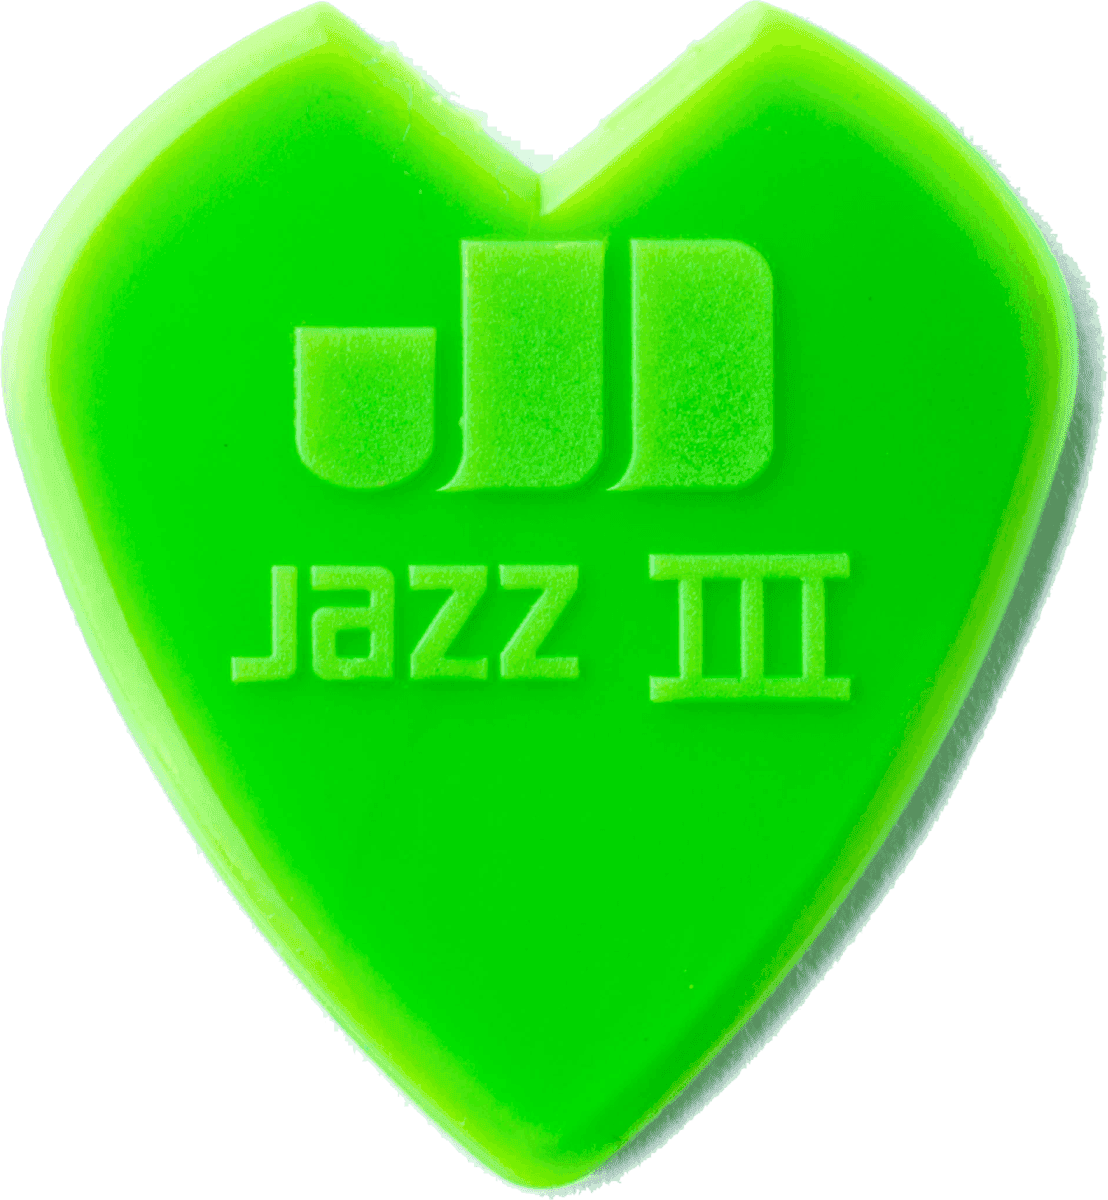 Kirk Hammett Jazz III, Custom V-Shaped